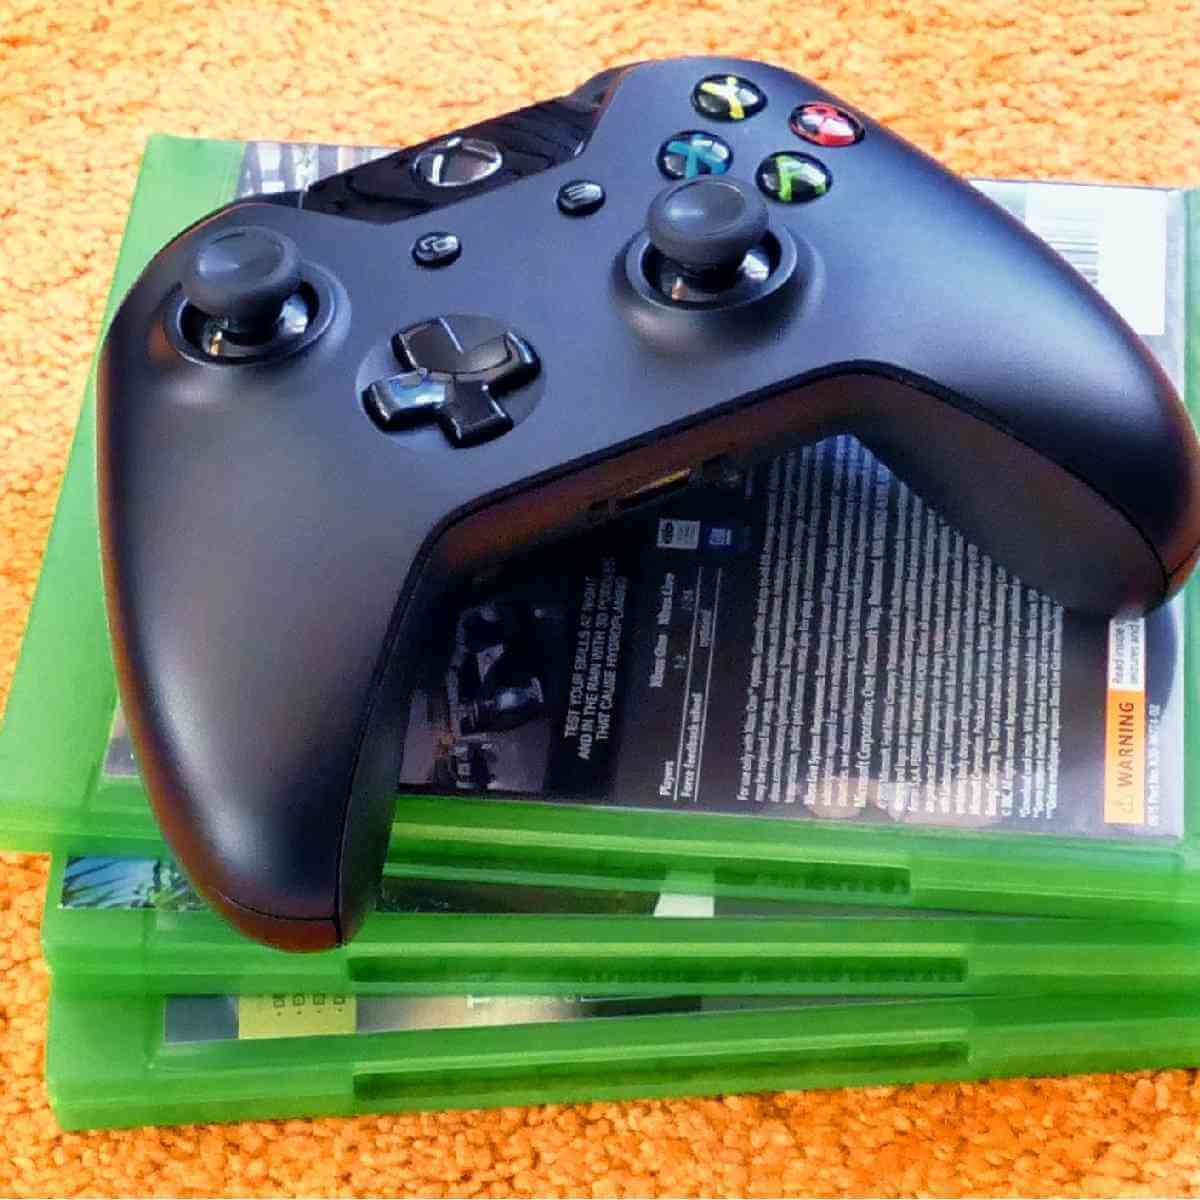 Change Roblox Password On Xbox One